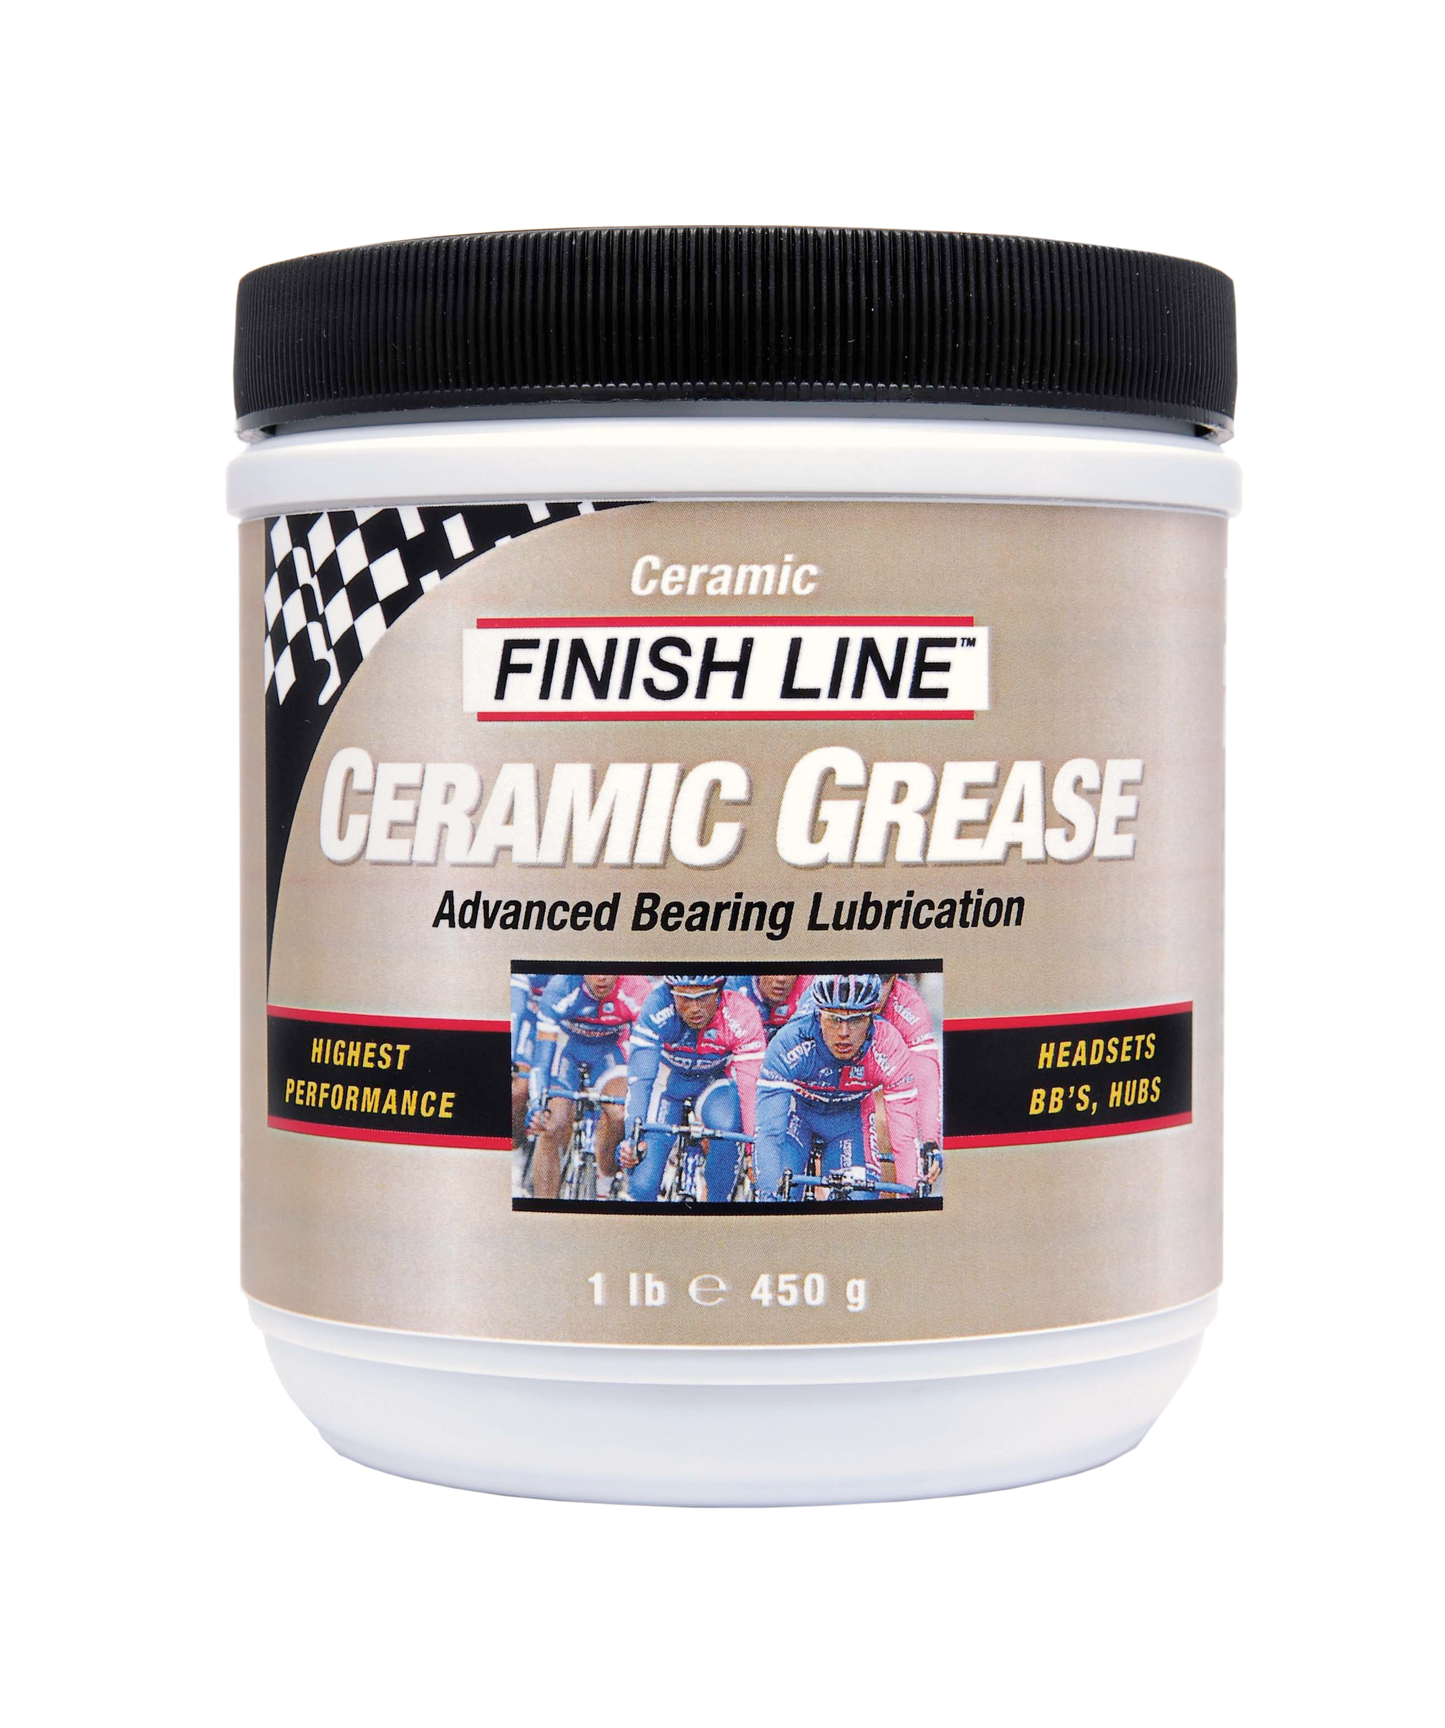 FINISHLINE CERAMIC GREASE 陶瓷雪油/ FINISHLINE CERAMIC GREASE